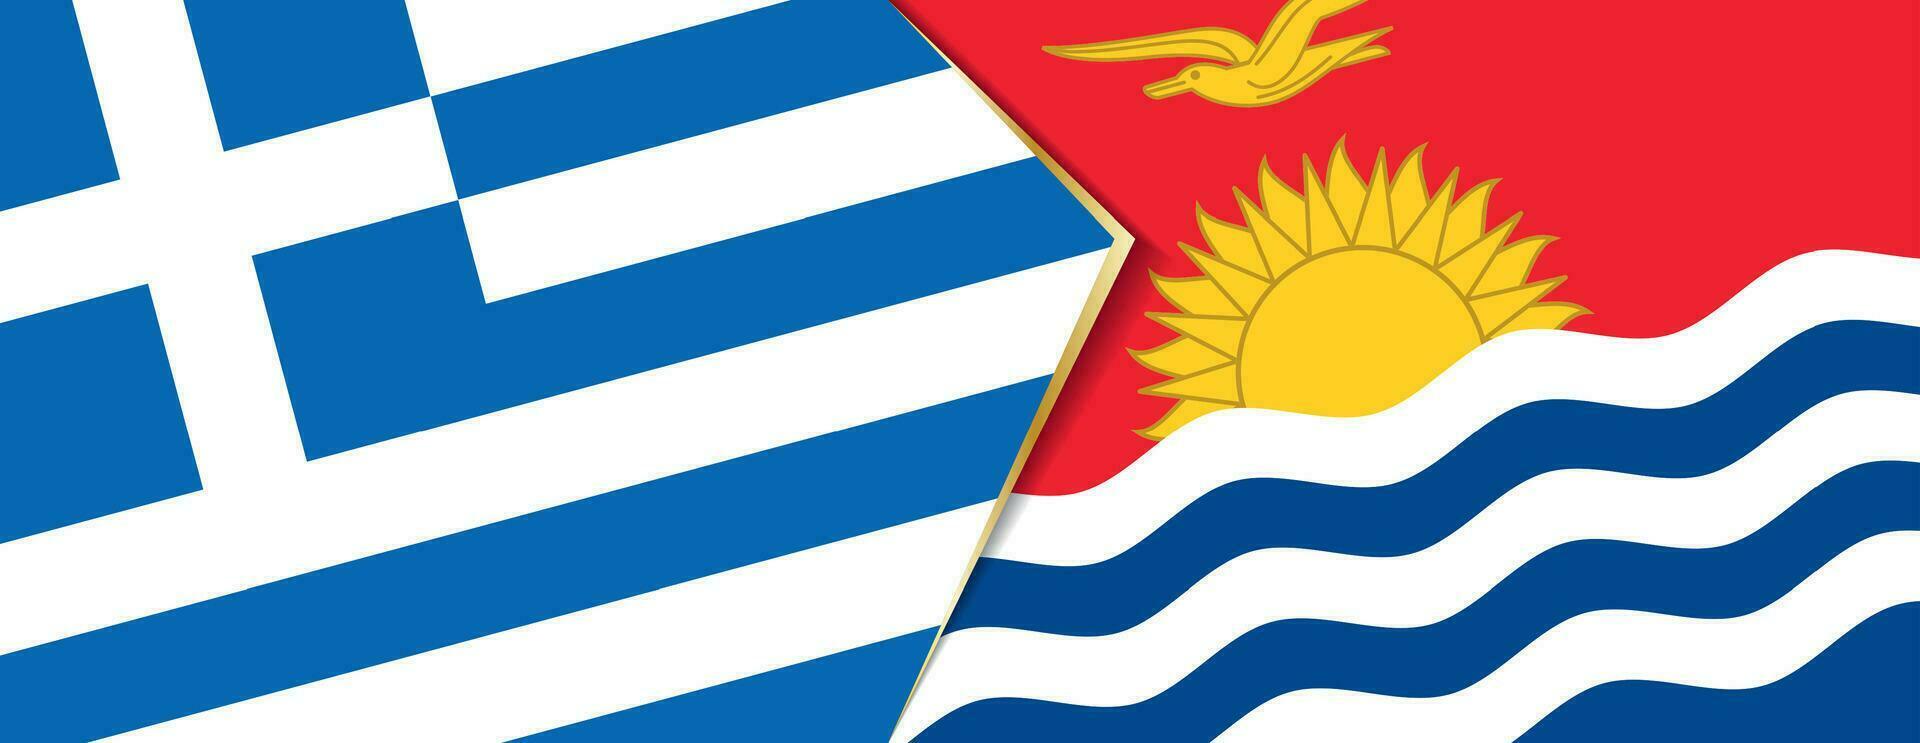 Grèce et Kiribati drapeaux, deux vecteur drapeaux.